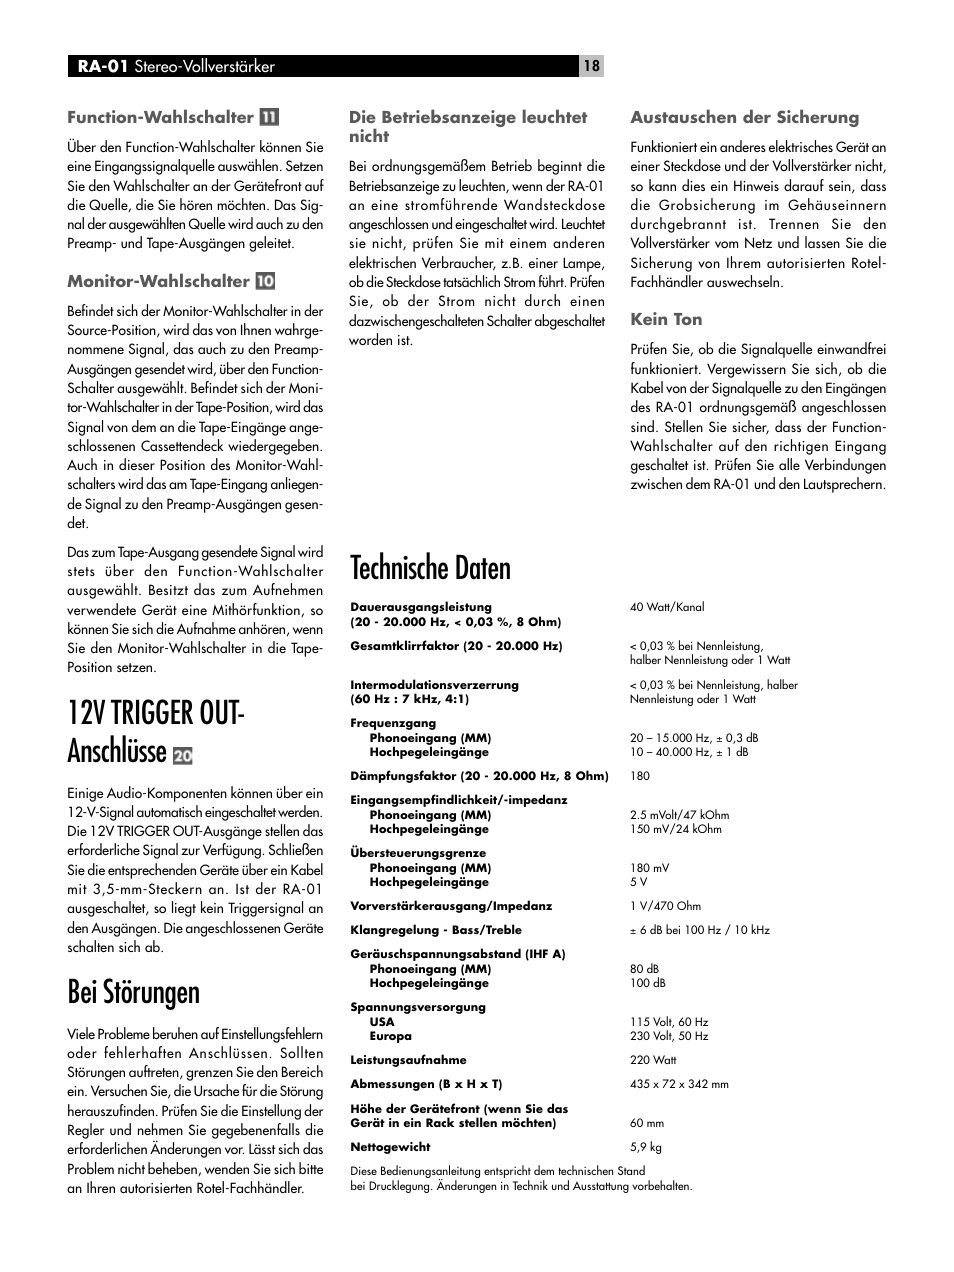 12v trigger out- anschlüsse, Bei störungen, Technische daten | ROTEL RA-01  User Manual | Page 18 / 42 | Original mode